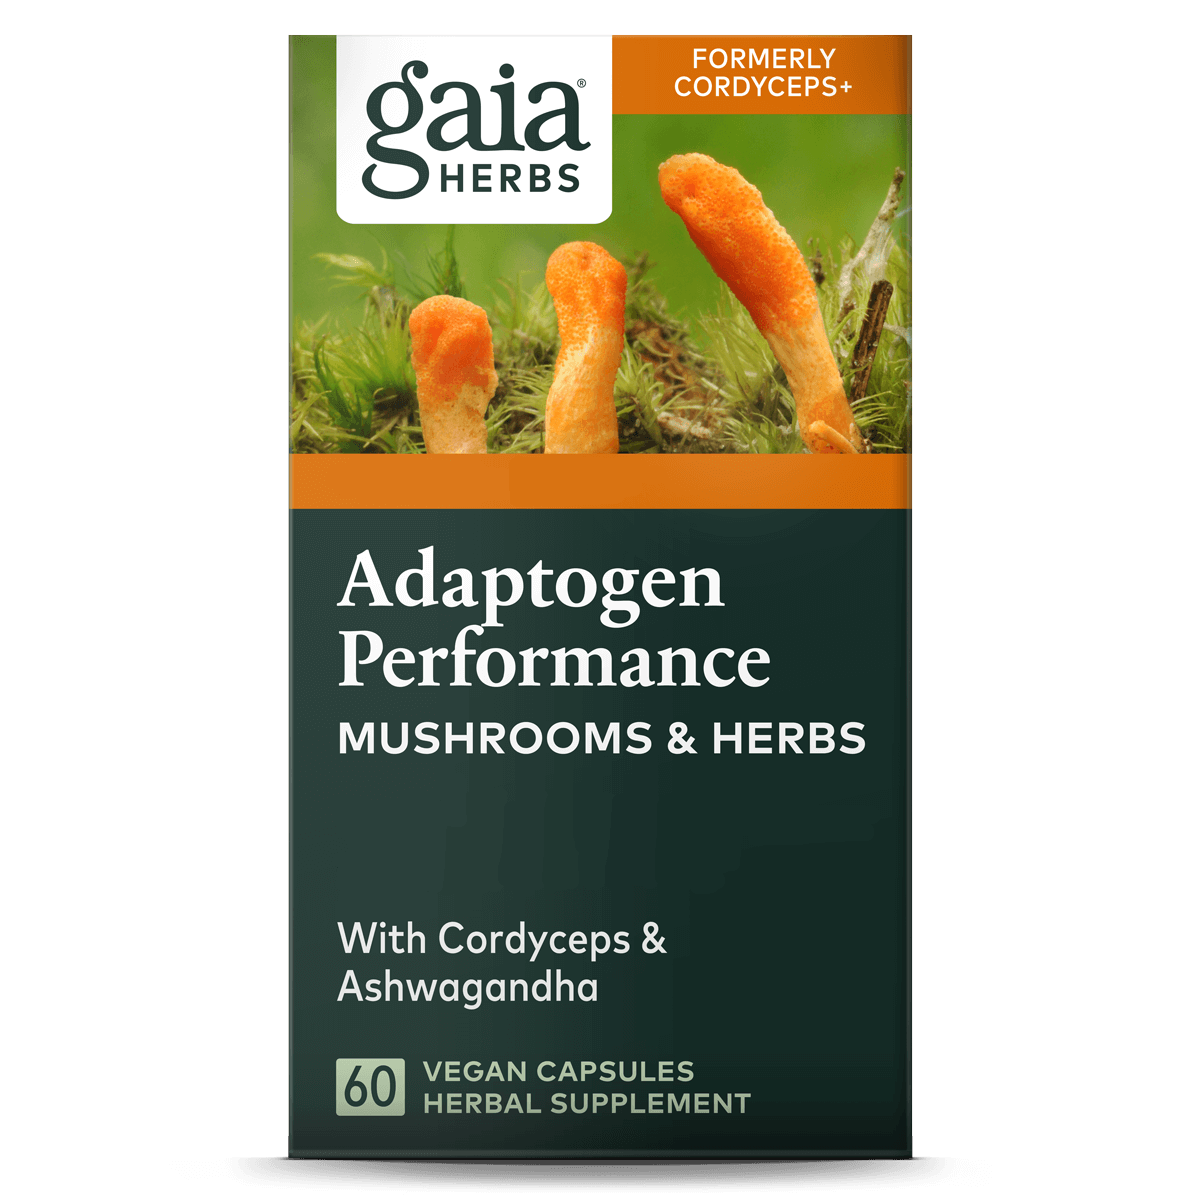 Adaptogen Performance - Gaia Herbs - Morgen is Nu